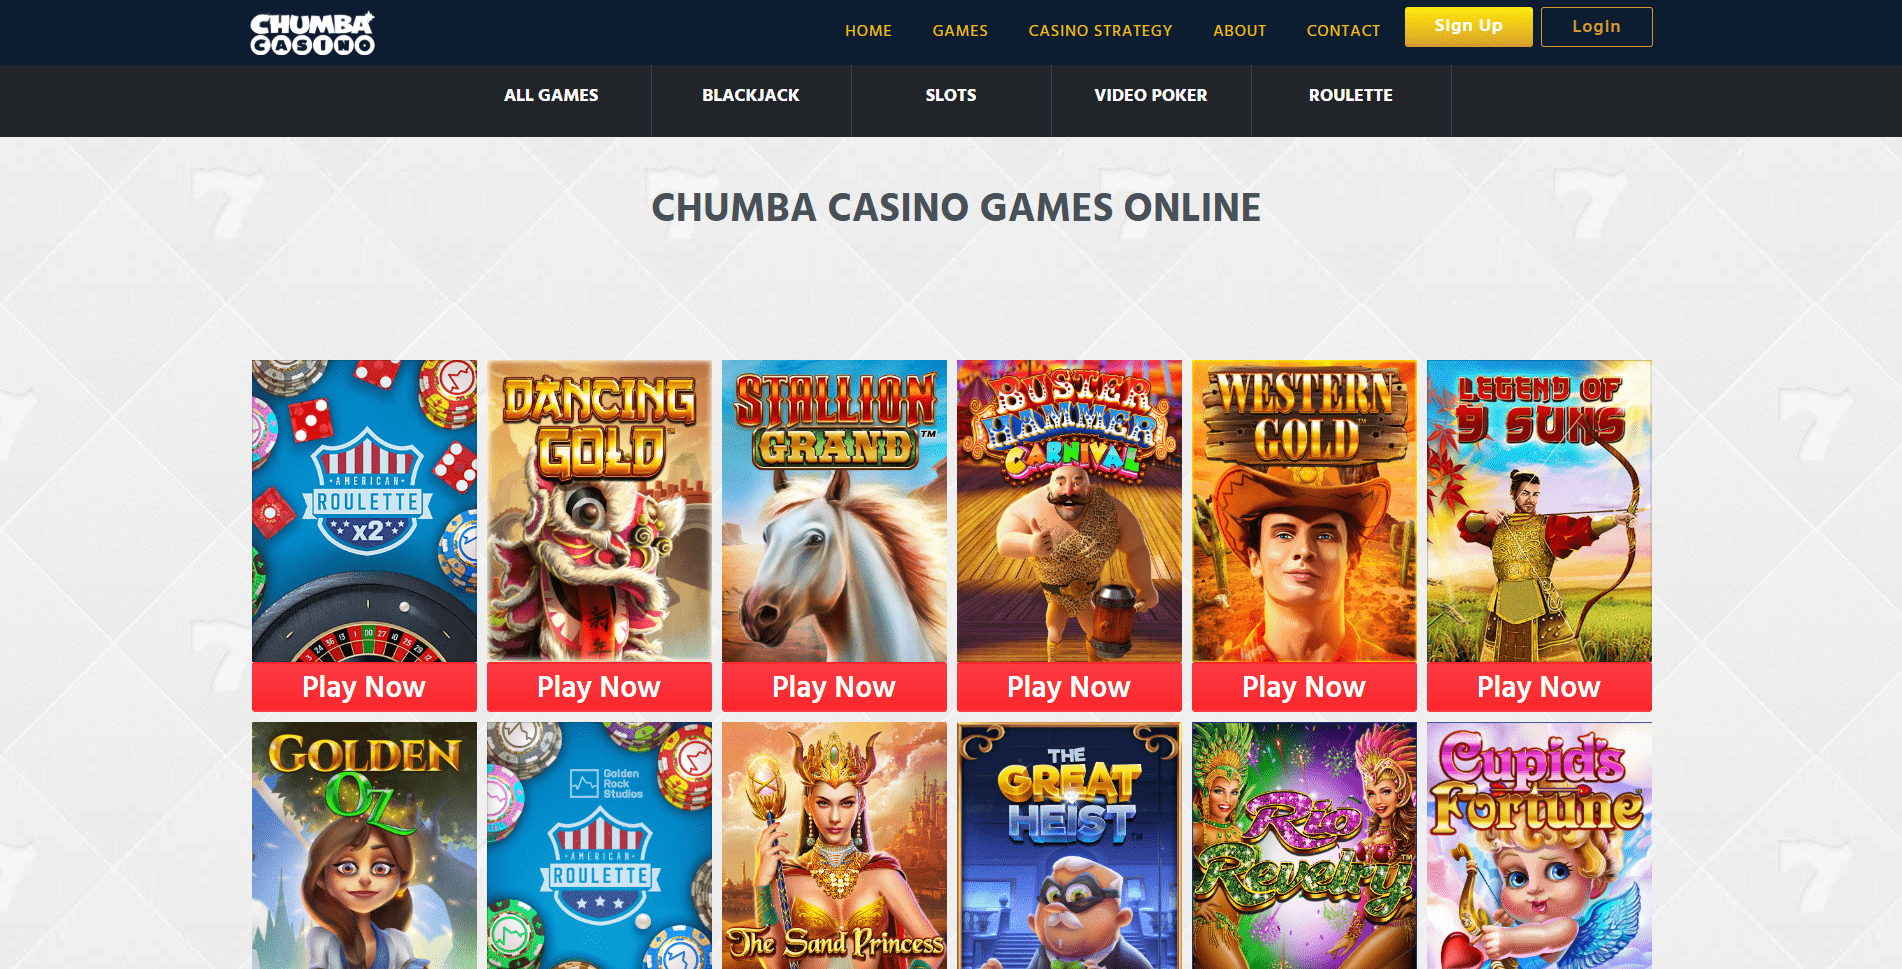 more games like chumba casino